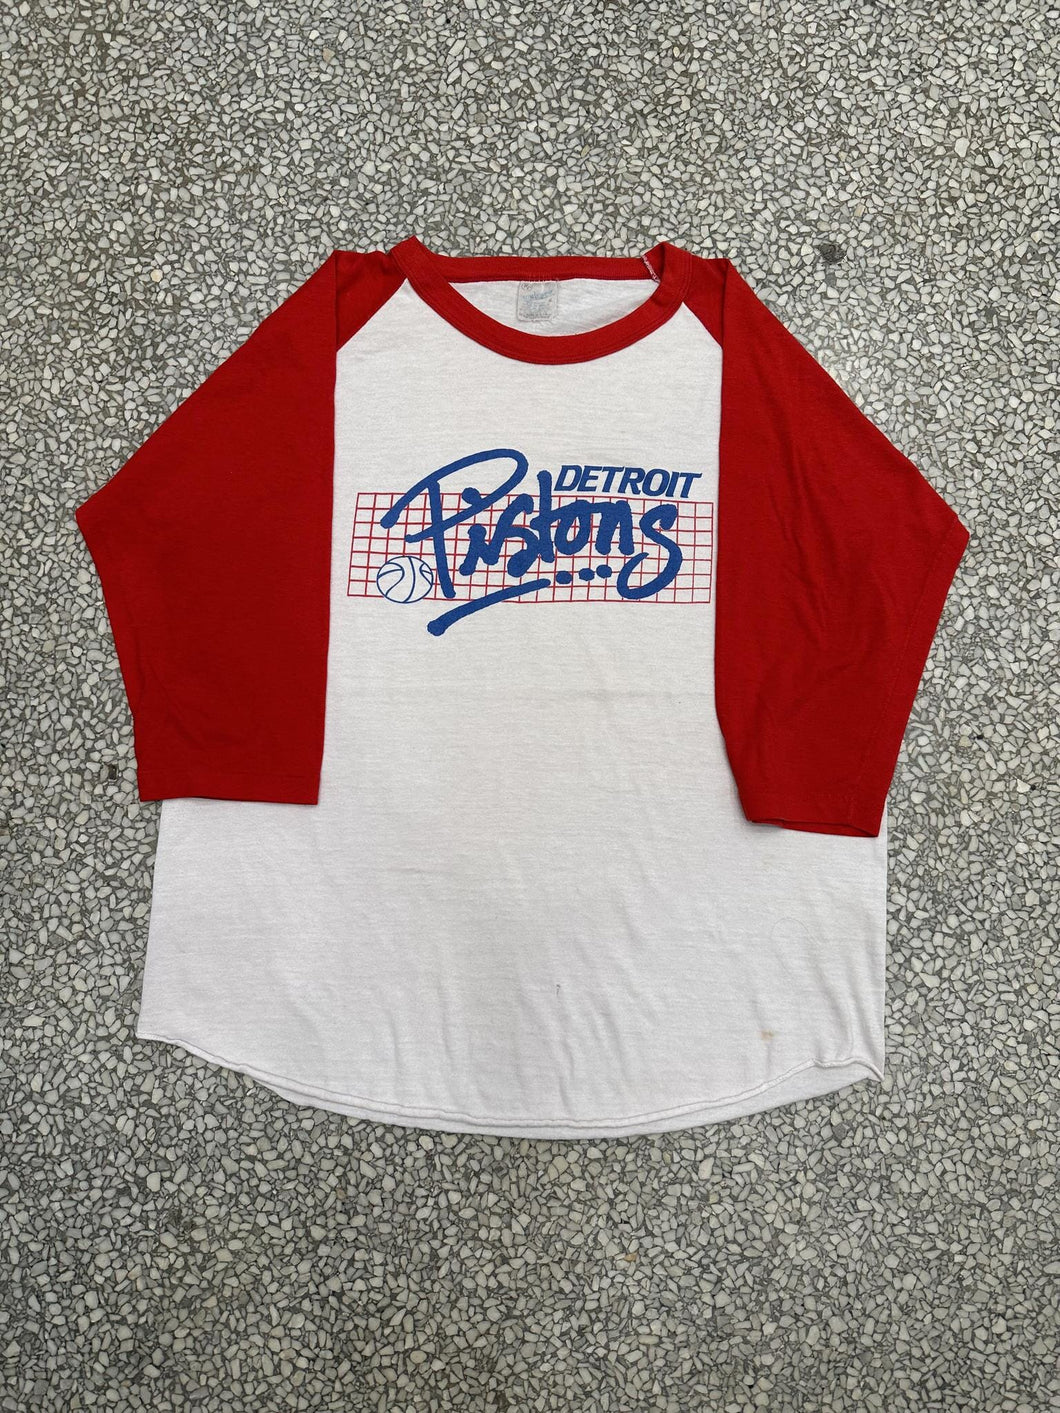 Detroit Pistons Vintage 80s Raglan Tee Paper Thin White Red ABC Vintage 